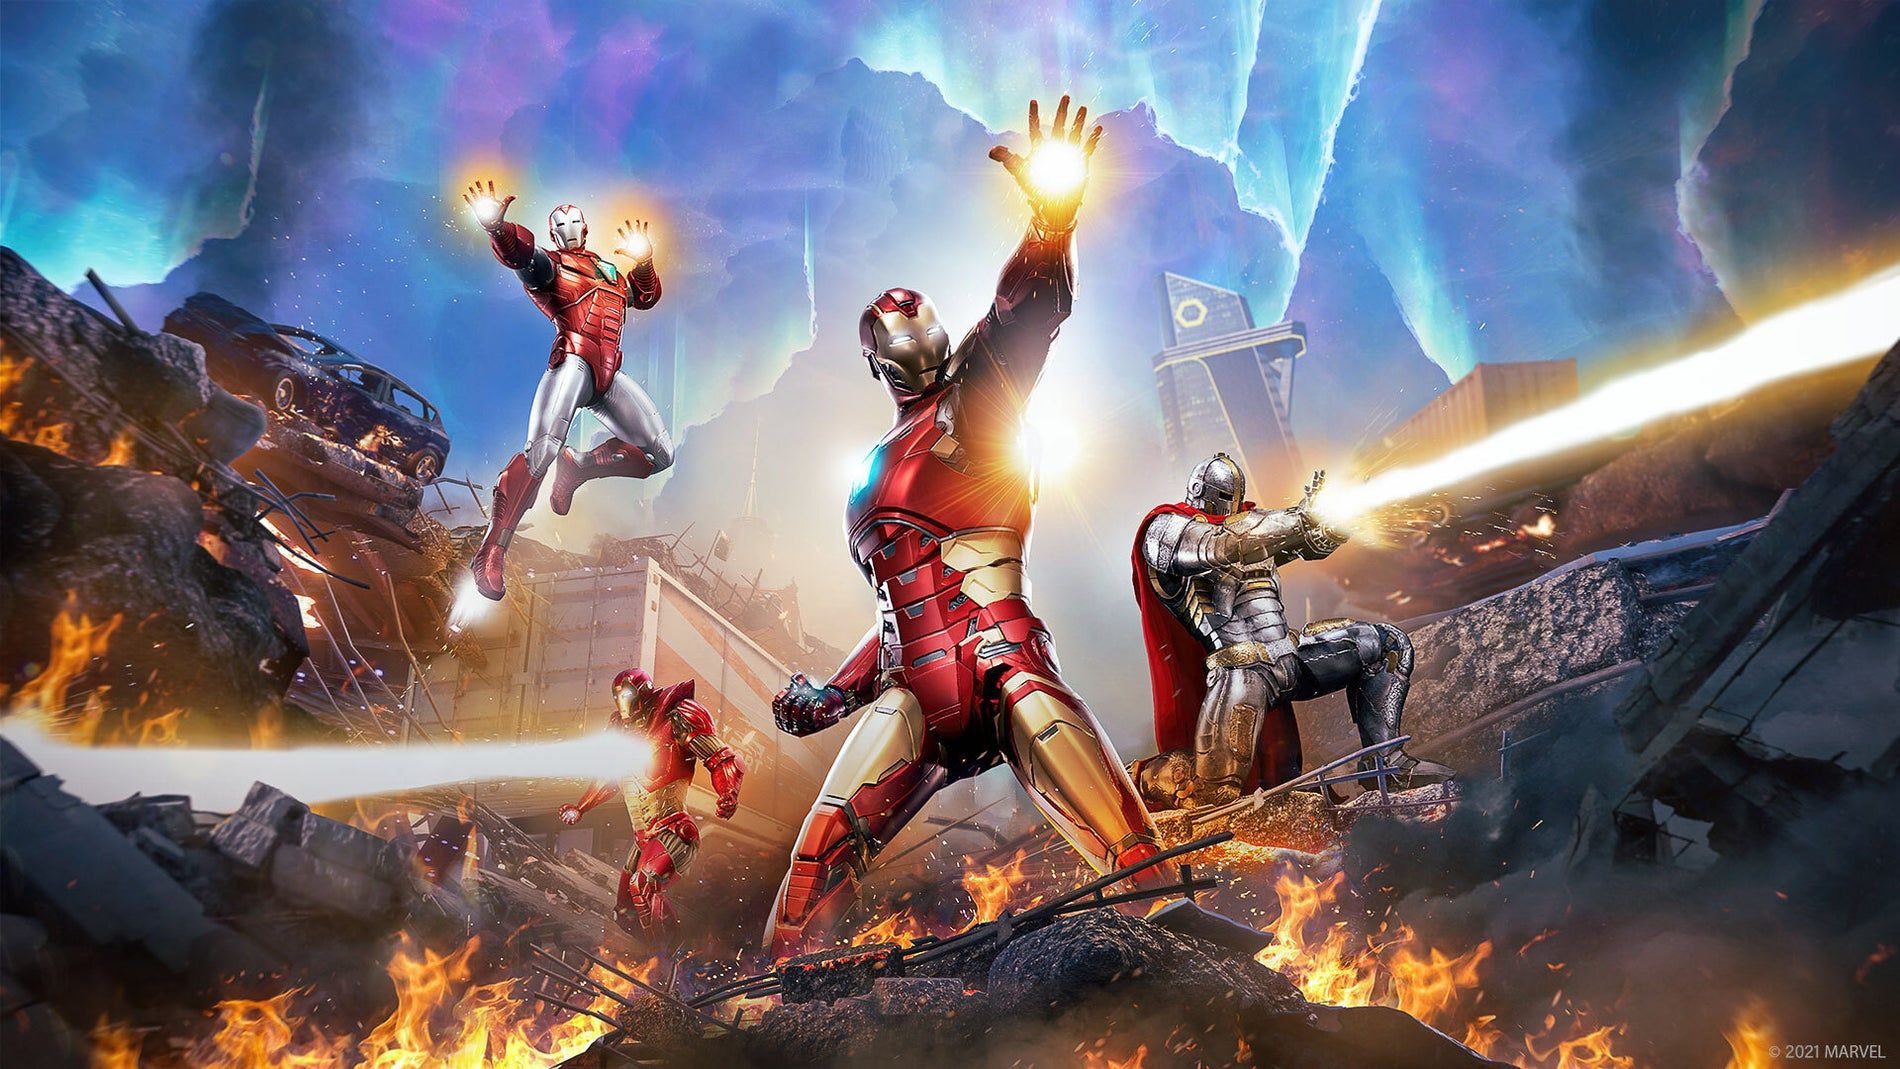 Marvel's Avengers rompt sa promesse sur les DLC en ajoutant des boosts pour progresser plus vite